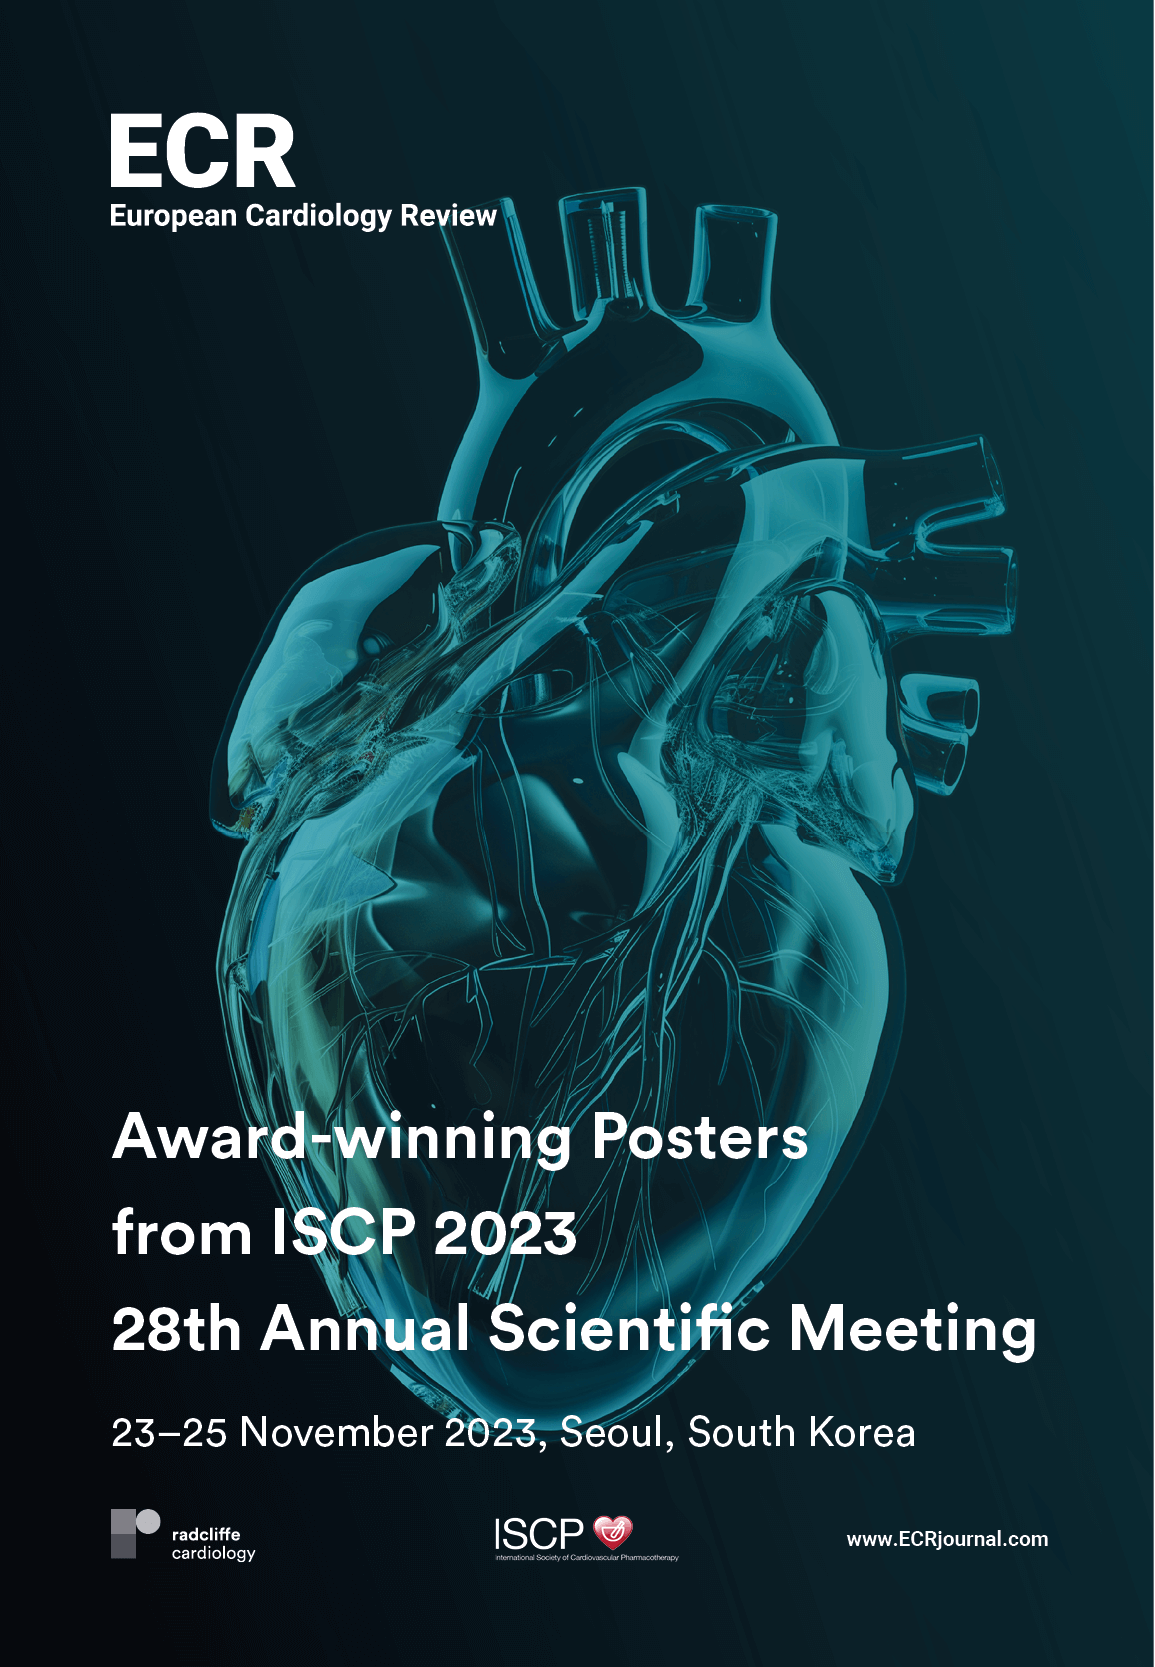 ISCP 2023: 28th Annual Scientific Meeting